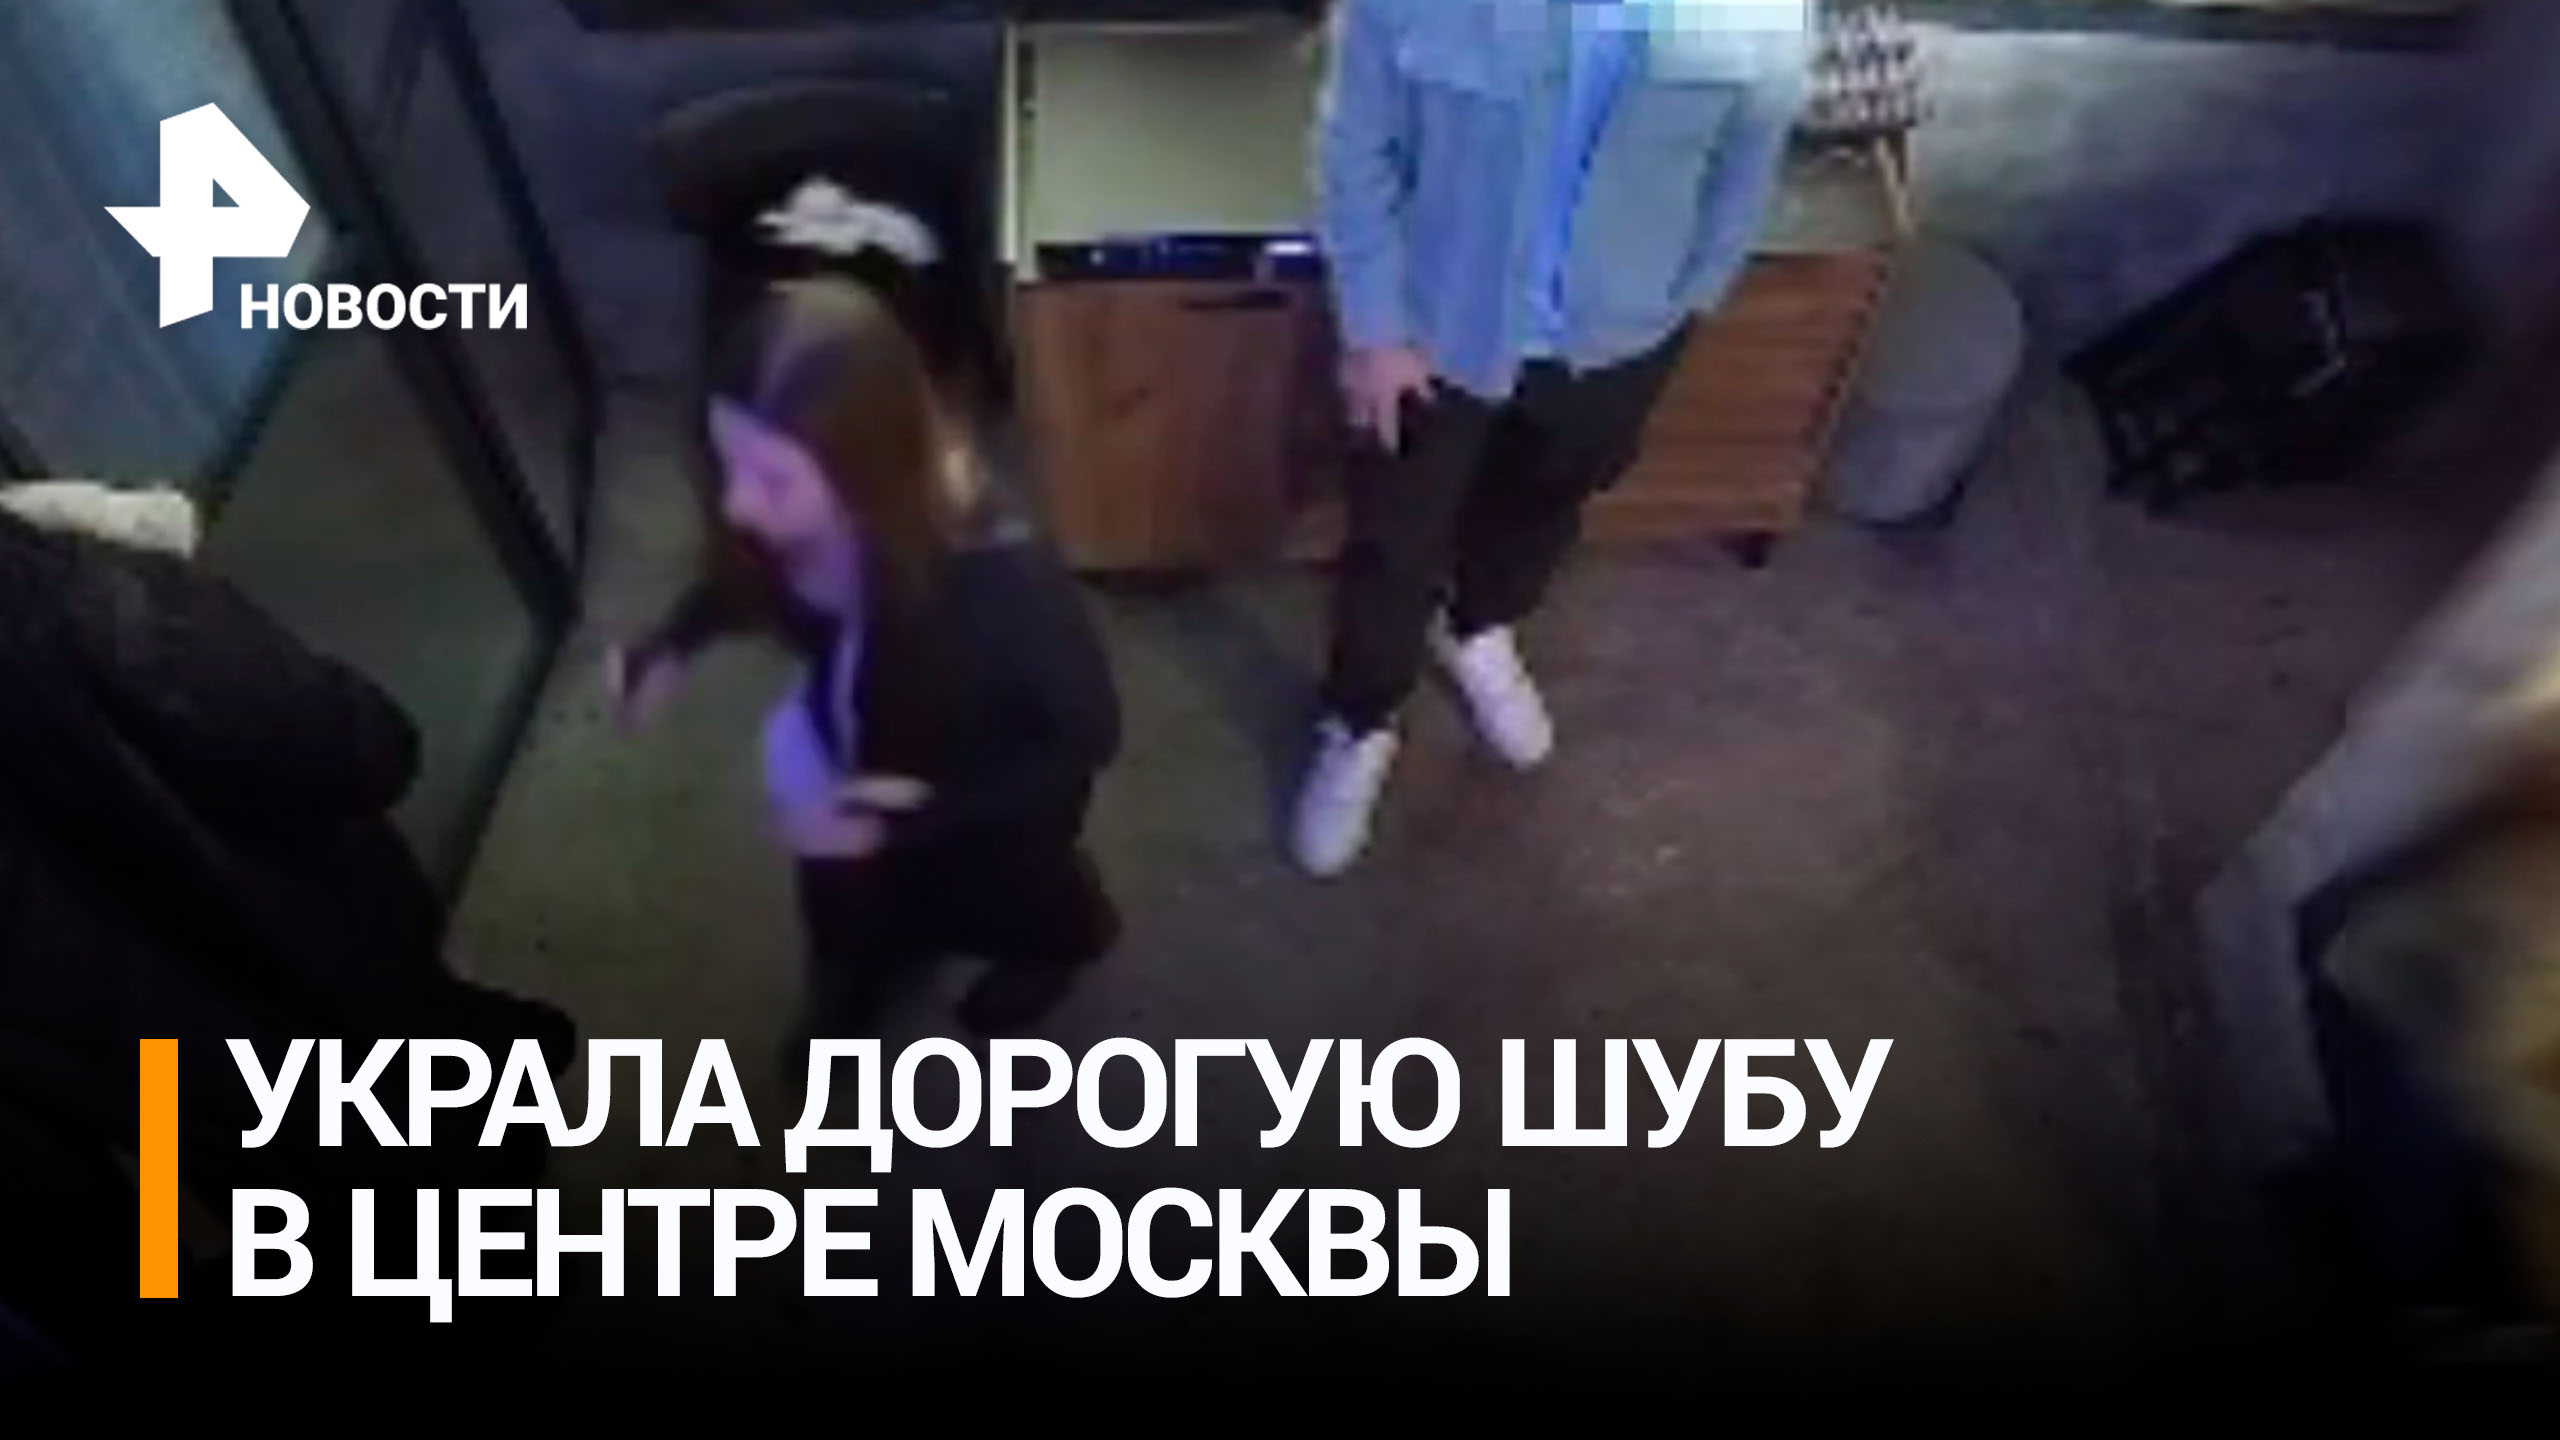 Ловкость рук и никакого мошенничества: девушка украла шубу за 270 тысяч у посетительницы кафе